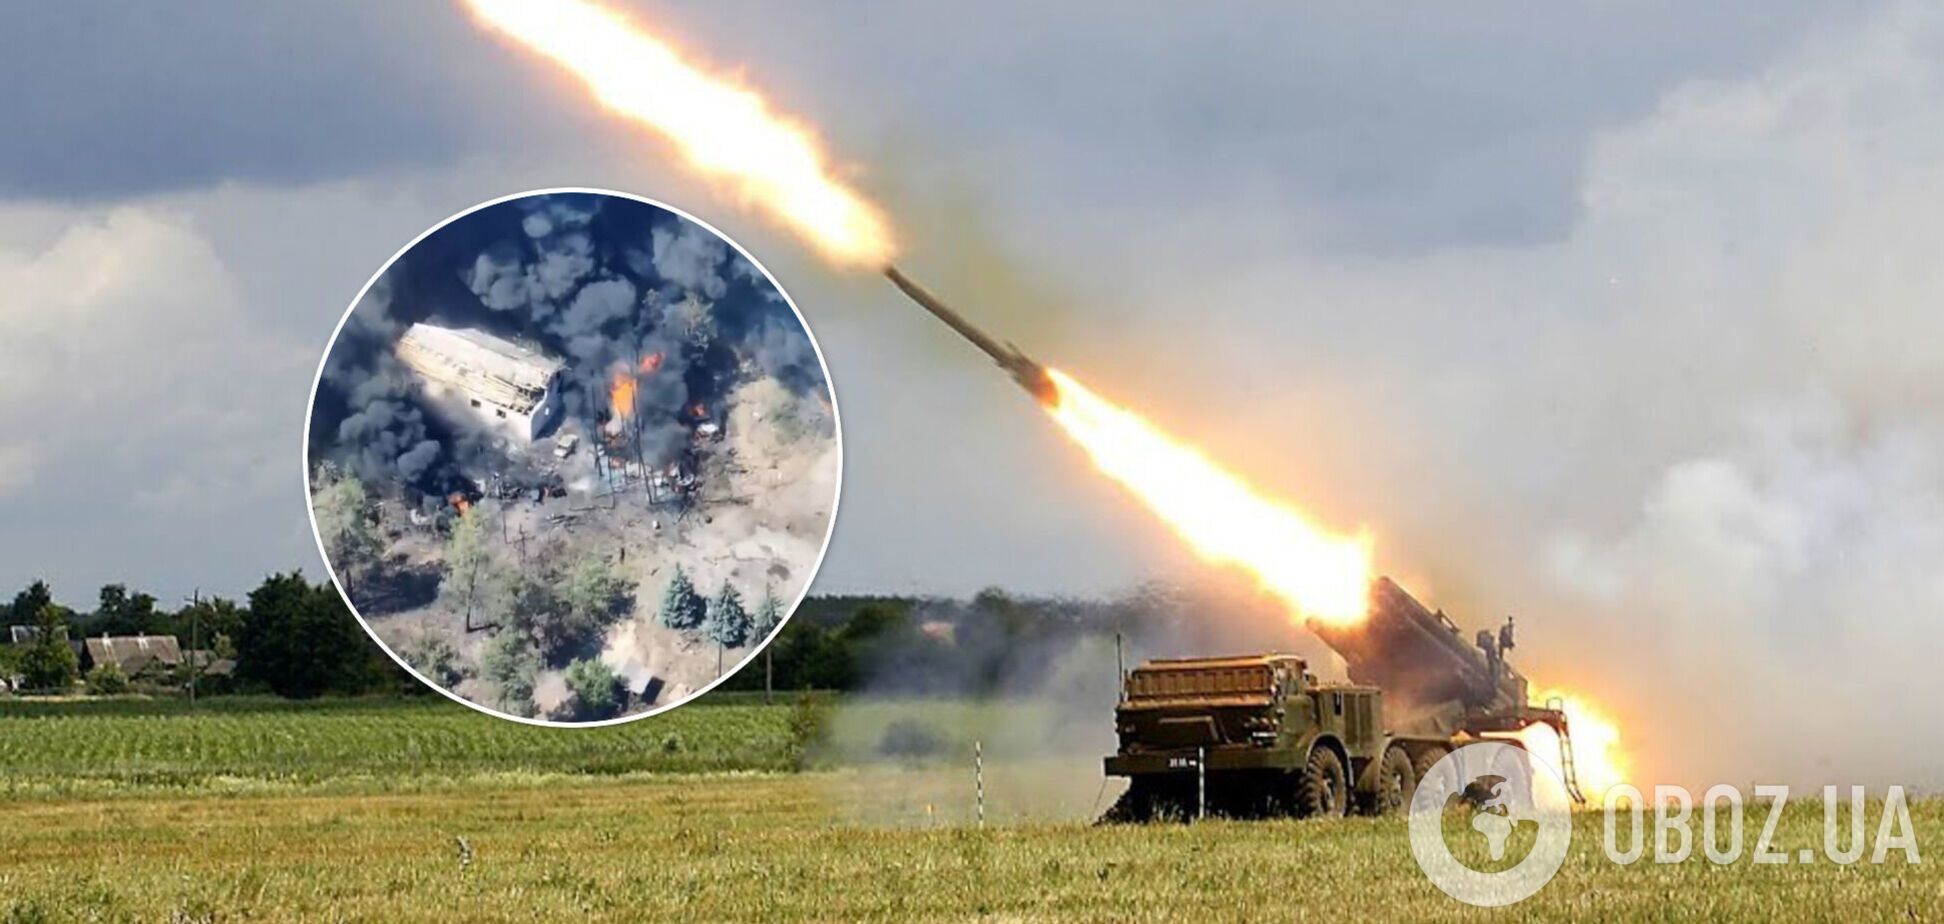 Украинские артиллеристы уничтожили российские 'Ураганы' вместе с 'группой поддержки': яркое видео